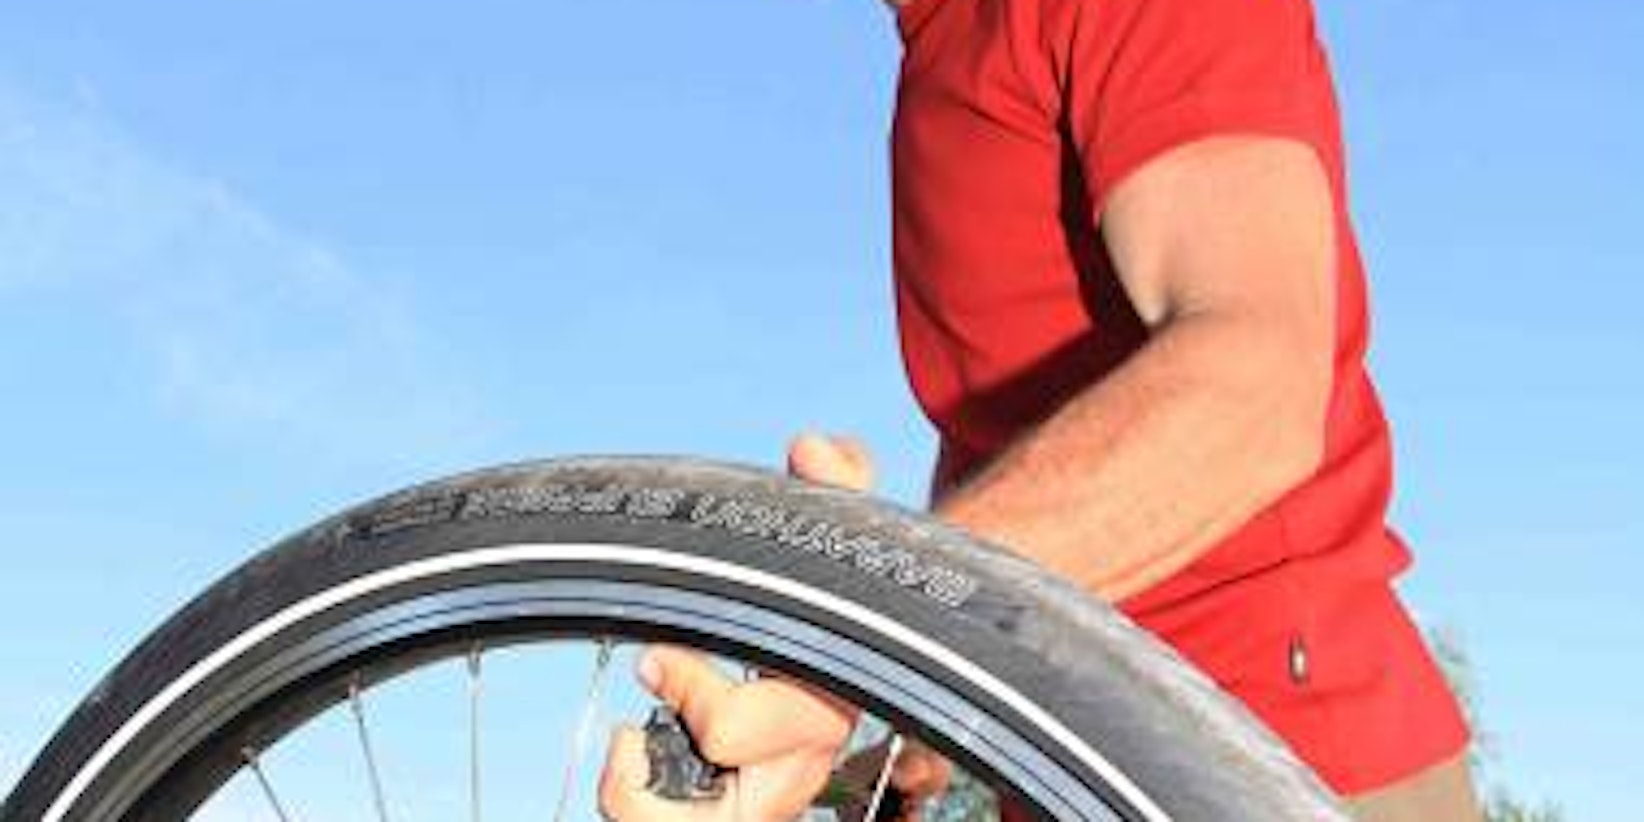 Ein platter Reifen kann die schönste Radtour vermiesen. Werkzeuge und Luftpumpe sollten deshalb nicht fehlen. (Bild: dpa)